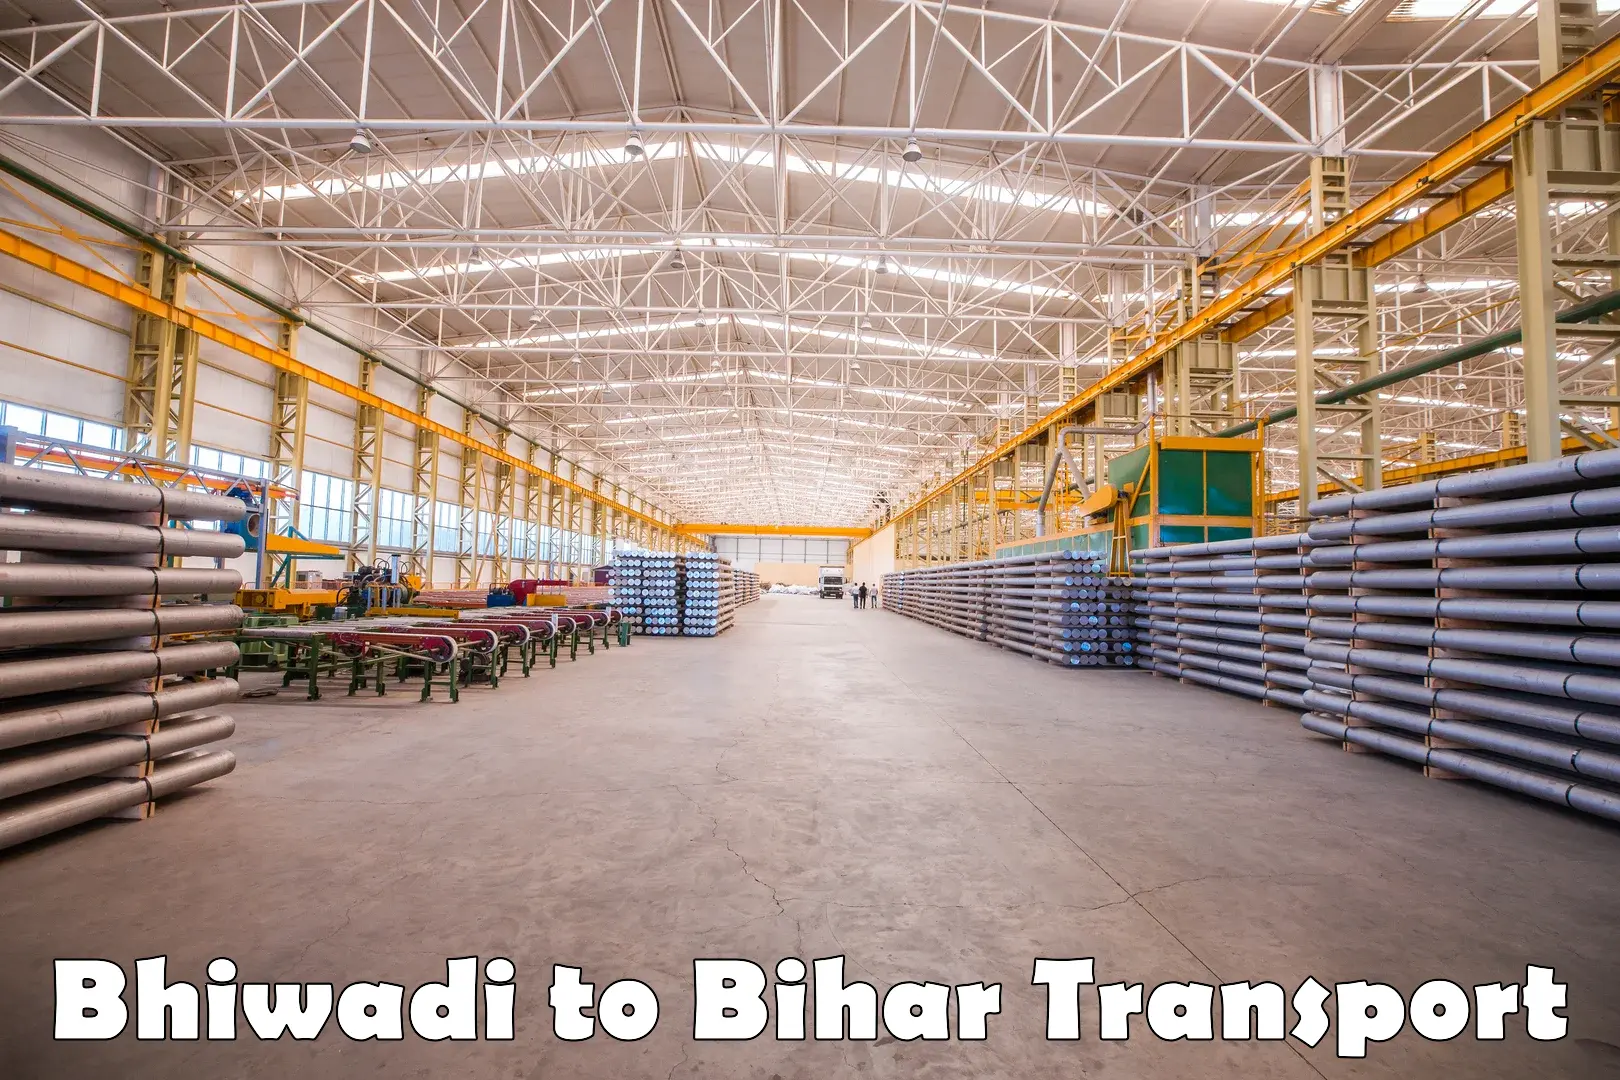 Furniture transport service Bhiwadi to Kochas